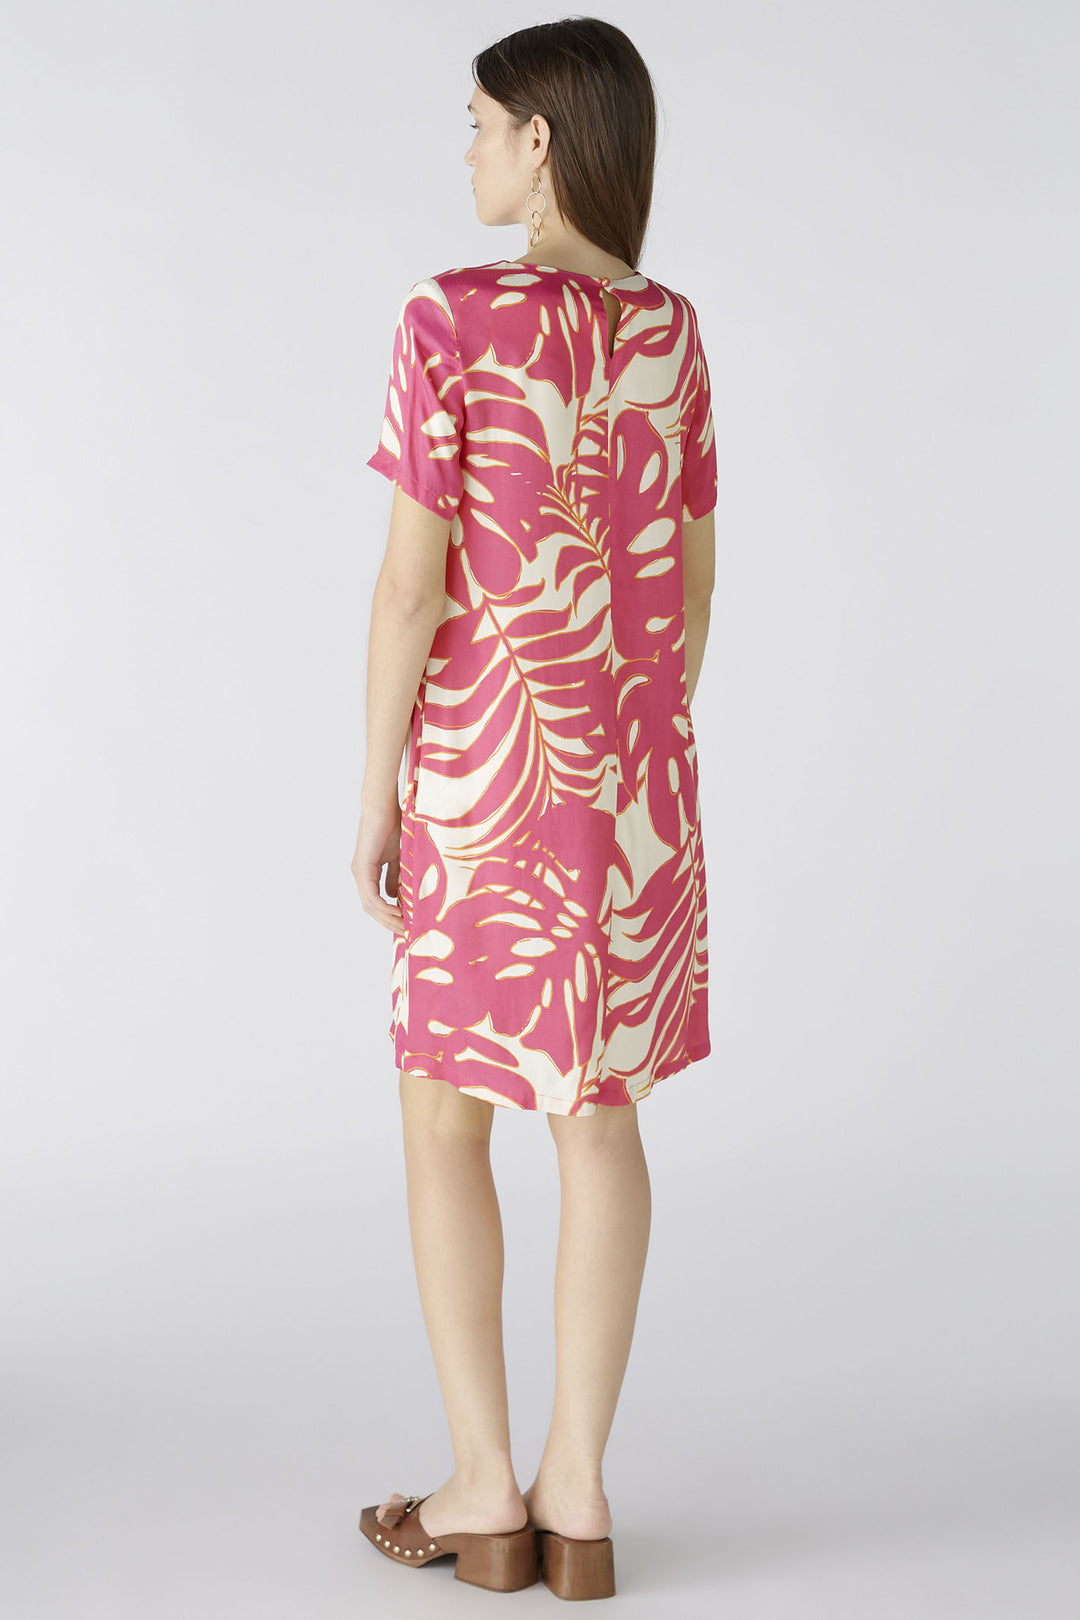 Oui 86713 Pink White Tropical Leaf Print Short Sleeve Dress - Olivia Grace Fashion